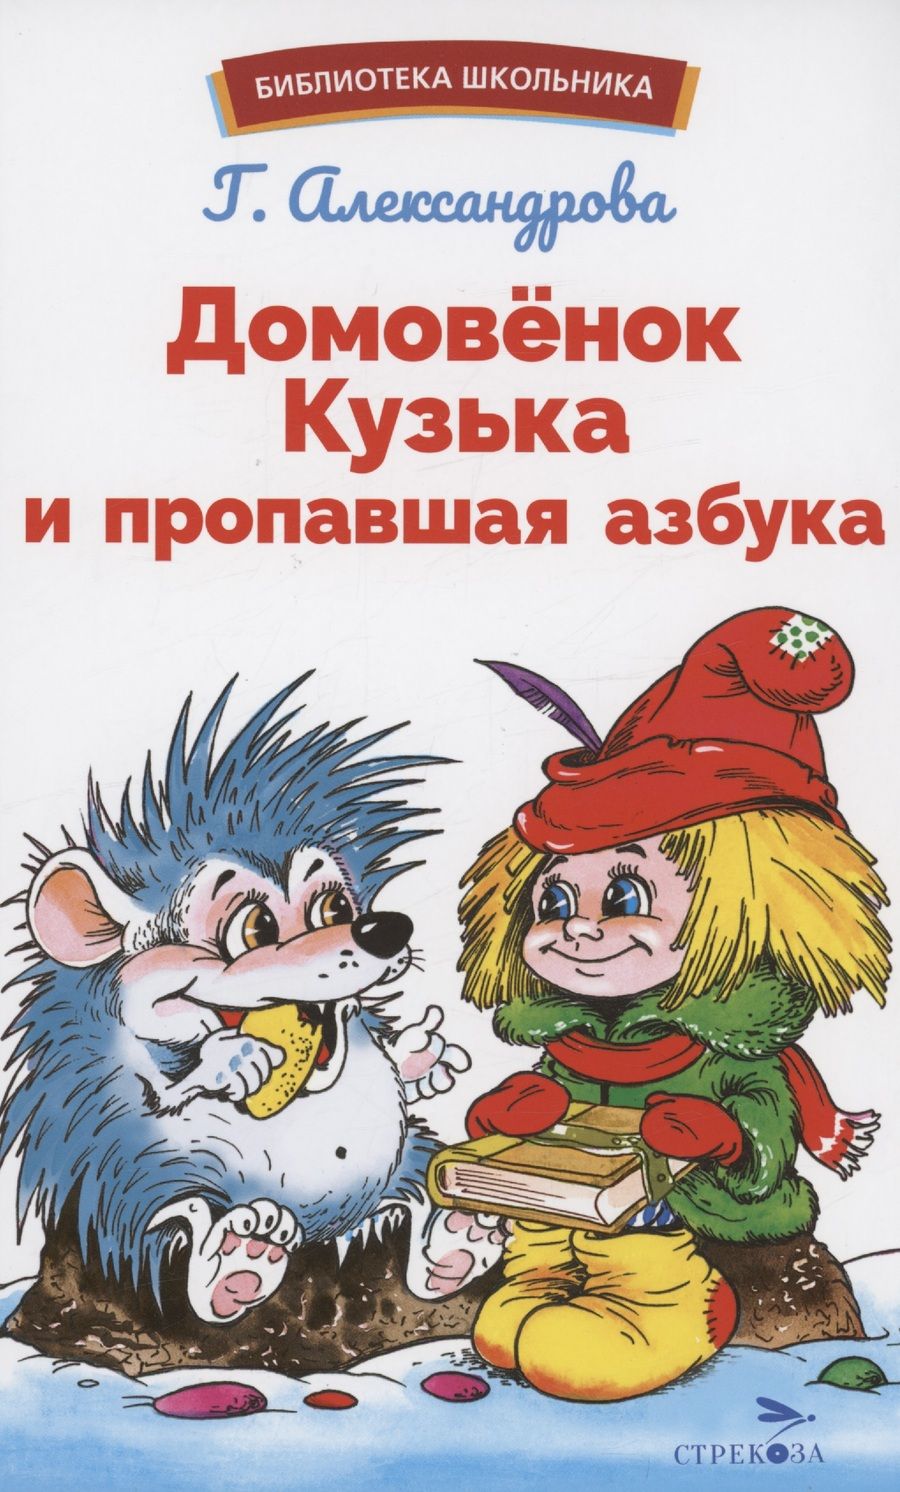 Обложка книги "Александрова: Домовенок Кузька и пропавшая Азбука"